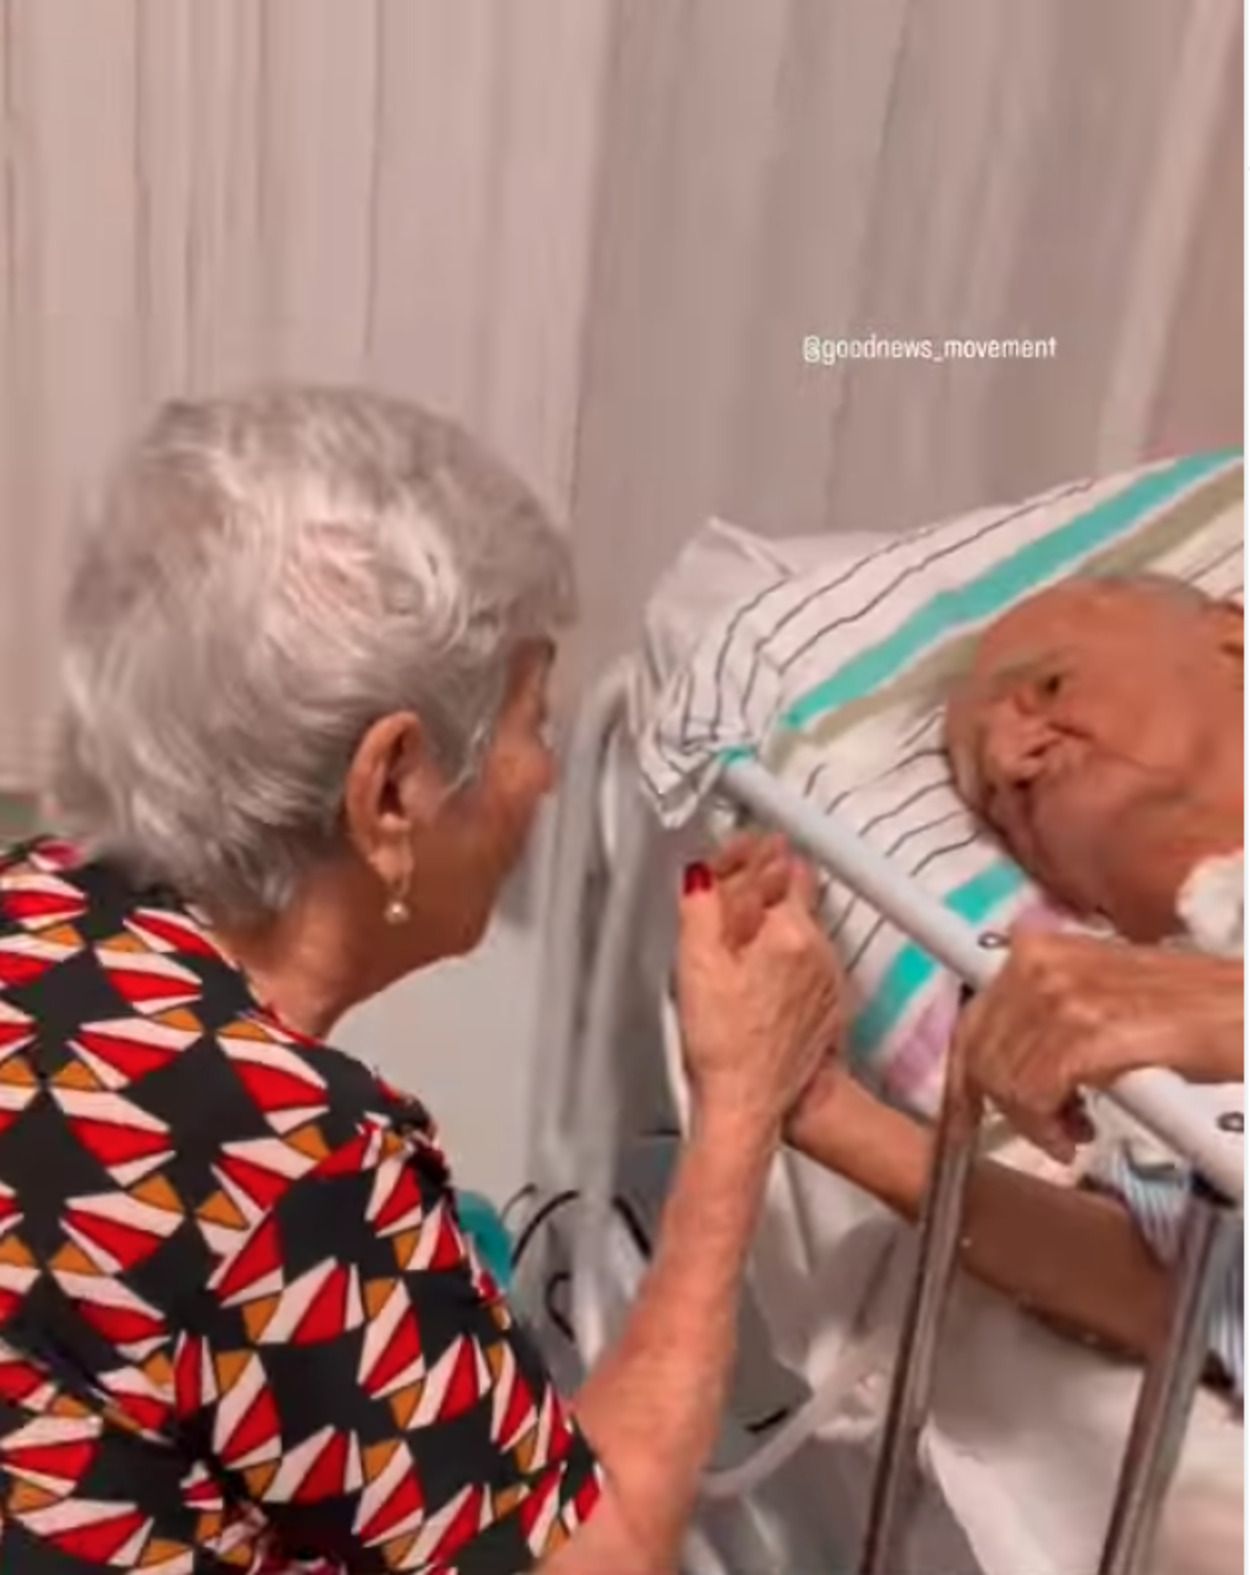 El emocionante vídeo de una mujer cántandole a su marido en el hospital